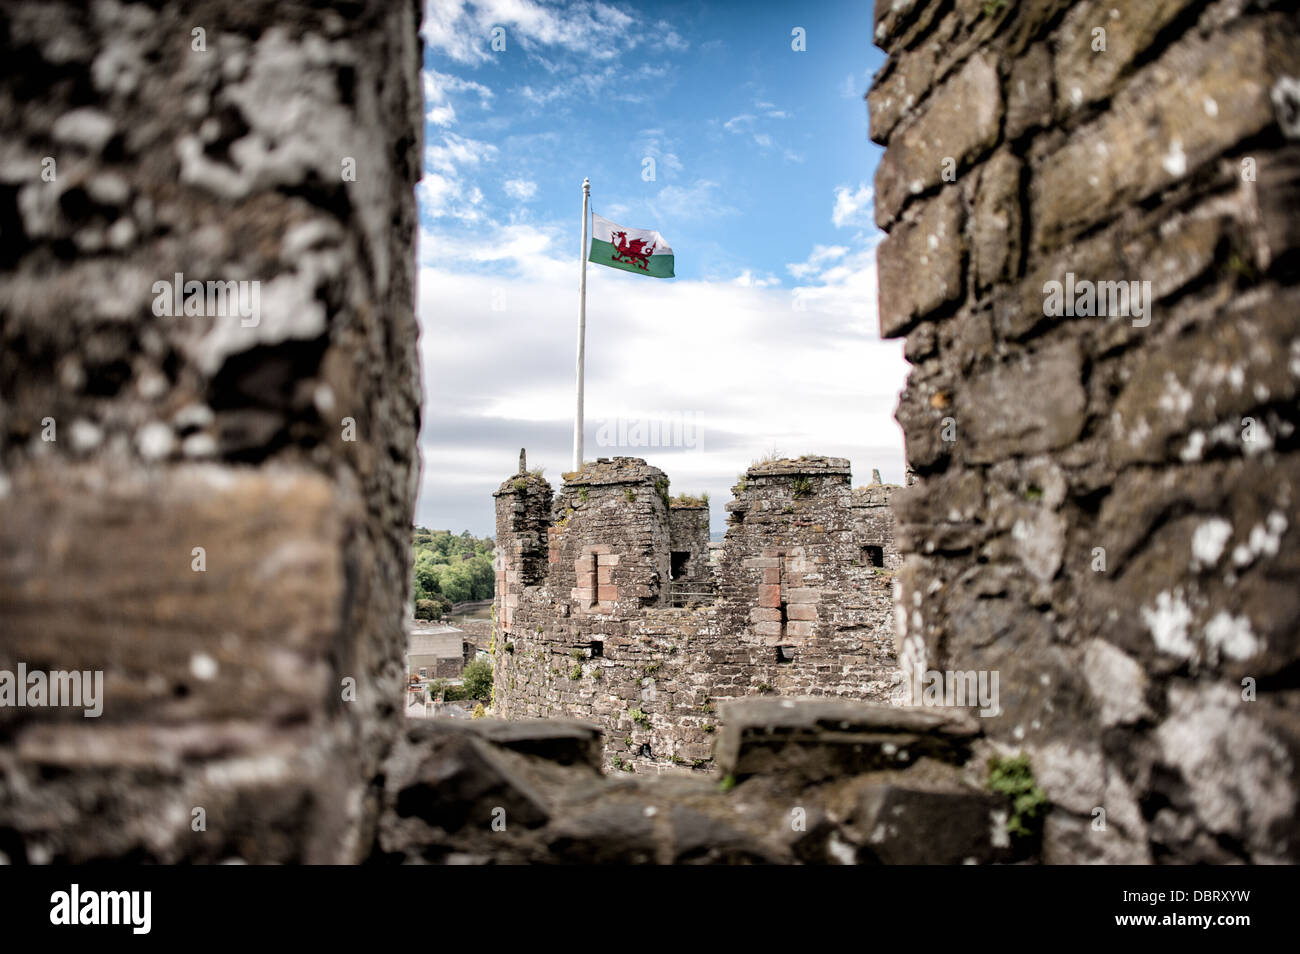 CONWY, Galles - Conwy Castle è un castello medievale costruito da Edoardo I alla fine del XIII secolo. Esso fa parte di una città murata di Conwy e occupa un punto strategico sul fiume Conwy. È elencato come un patrimonio mondiale dell'Umanità. Foto Stock